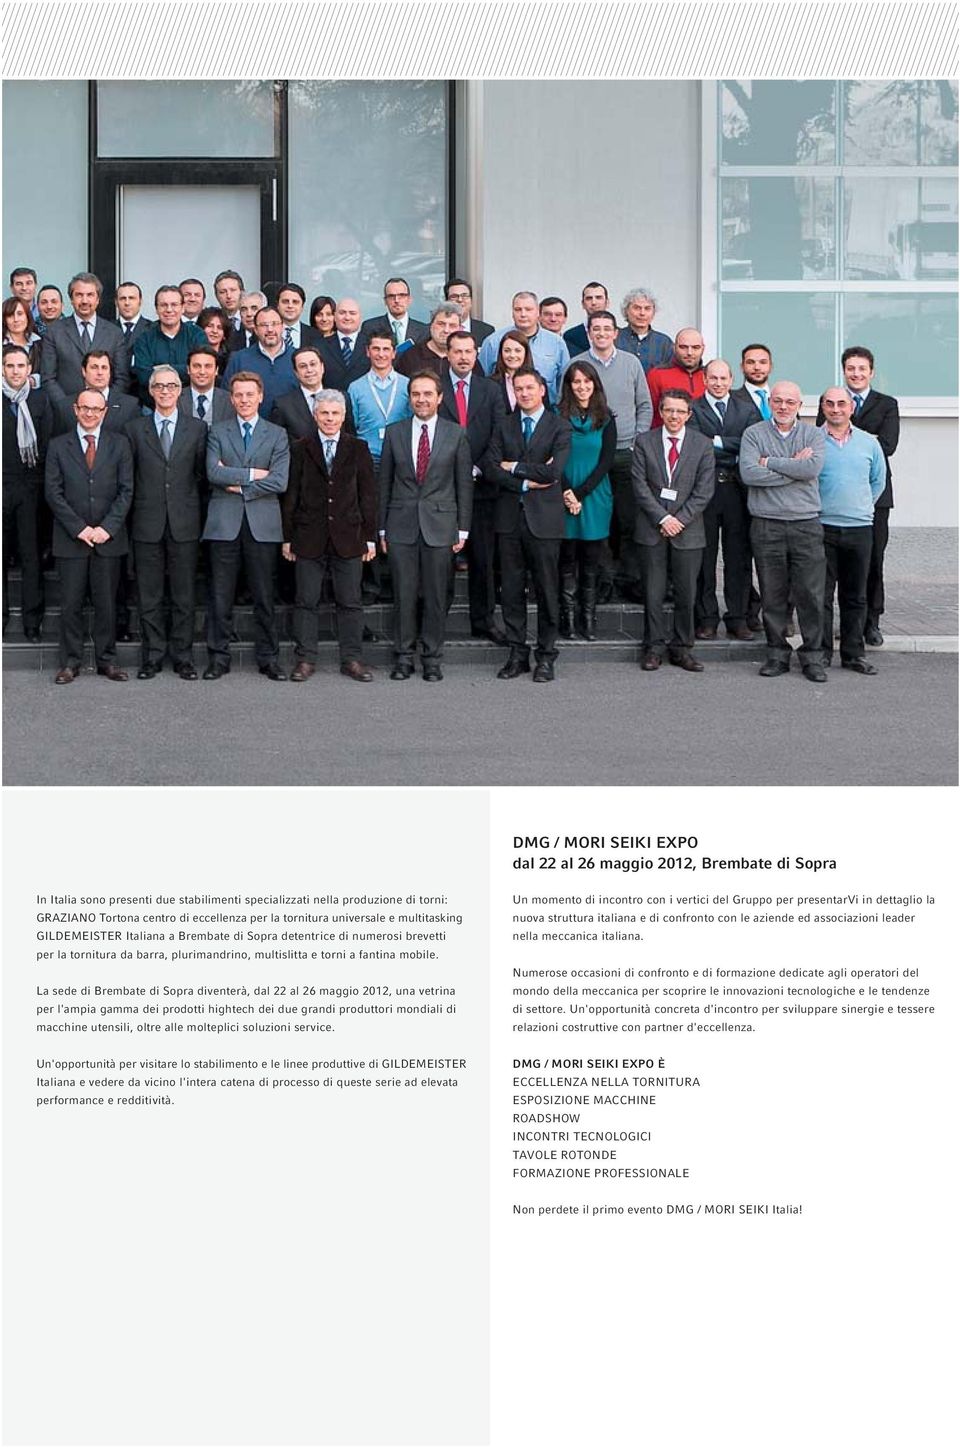 La sede di Brembate di Sopra diventerà, dal 22 al 26 maggio 2012, una vetrina per l'ampia gamma dei prodotti hightech dei due grandi produttori mondiali di macchine utensili, oltre alle molteplici